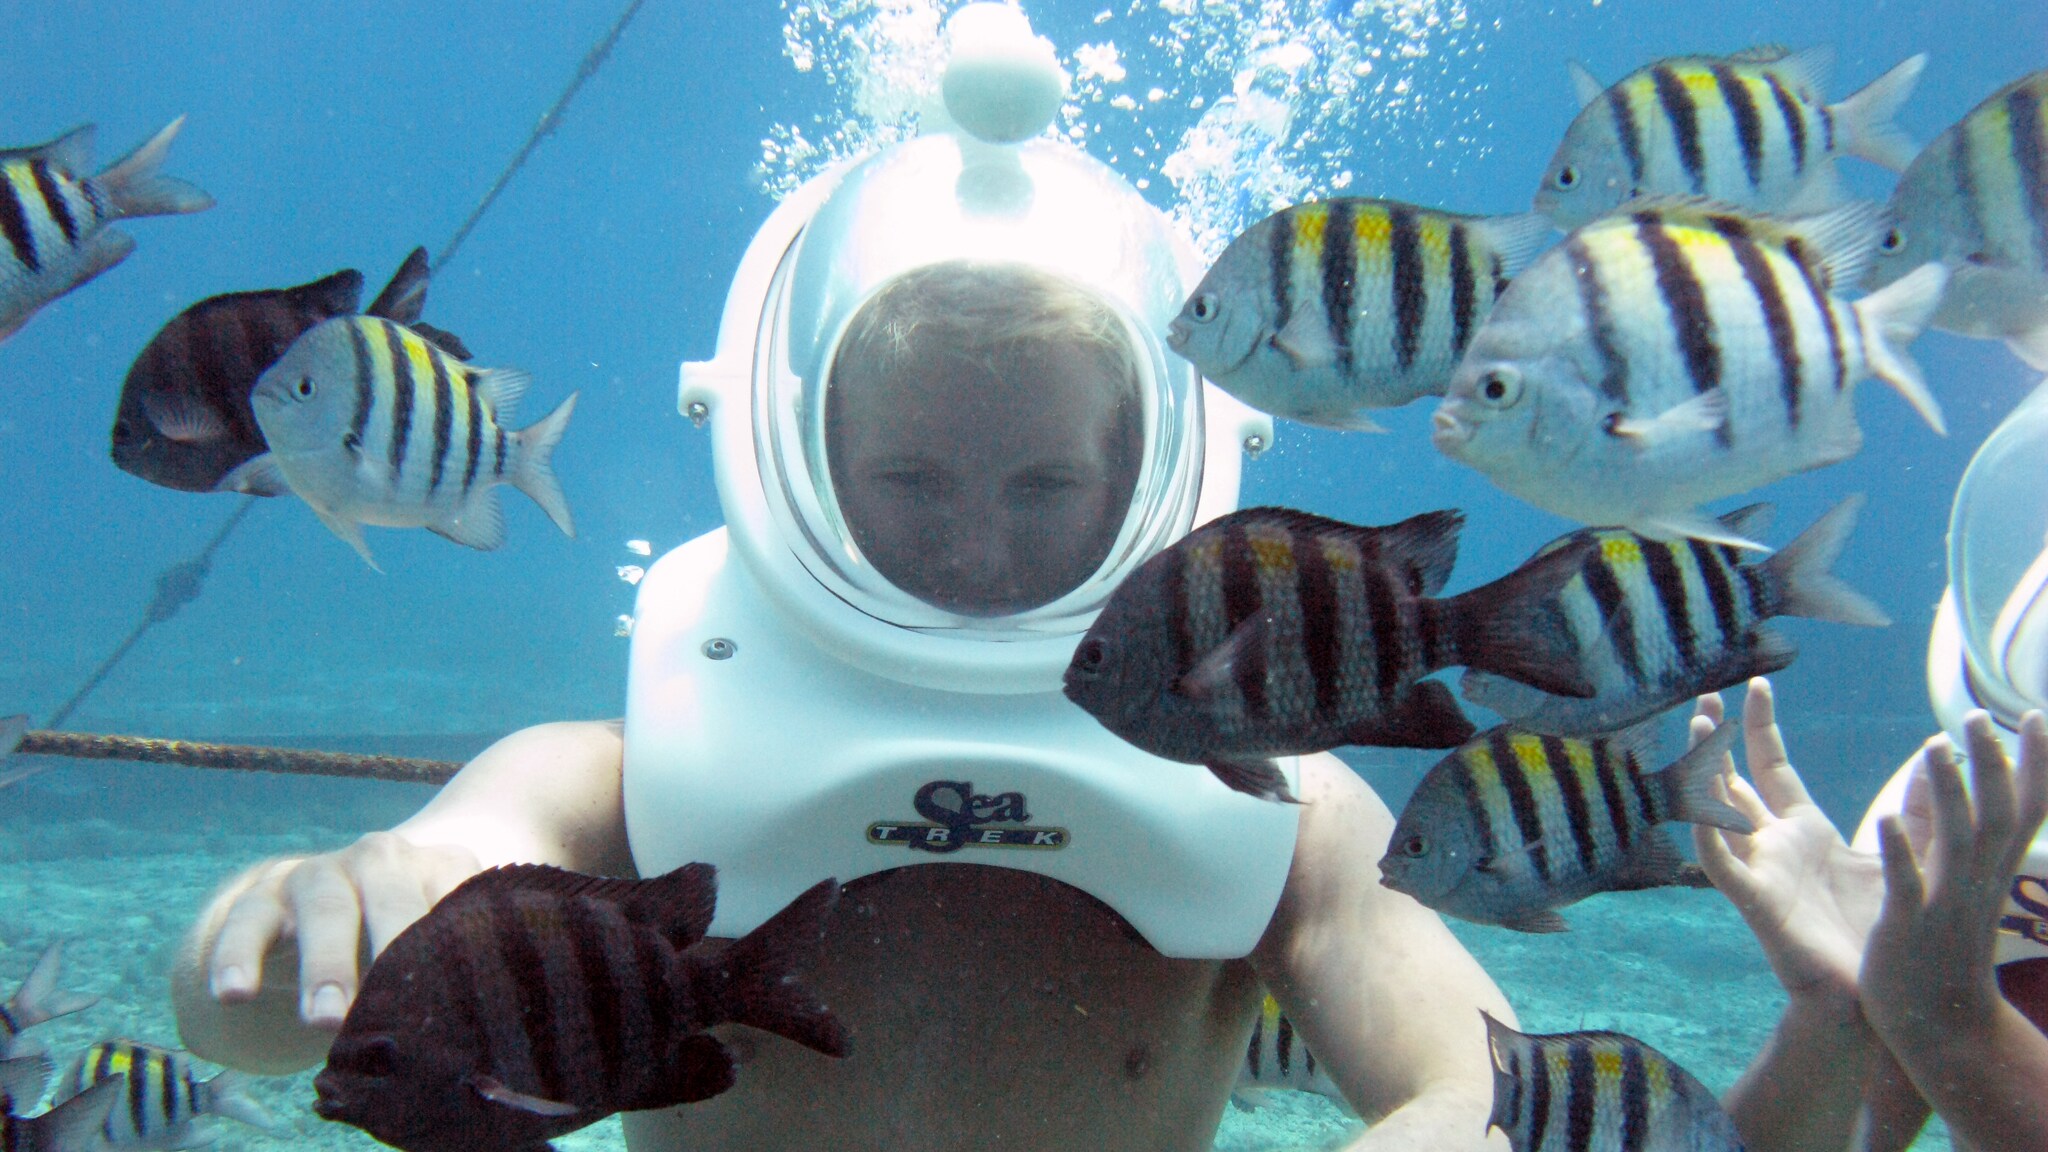 sea trek diving helmet for sale